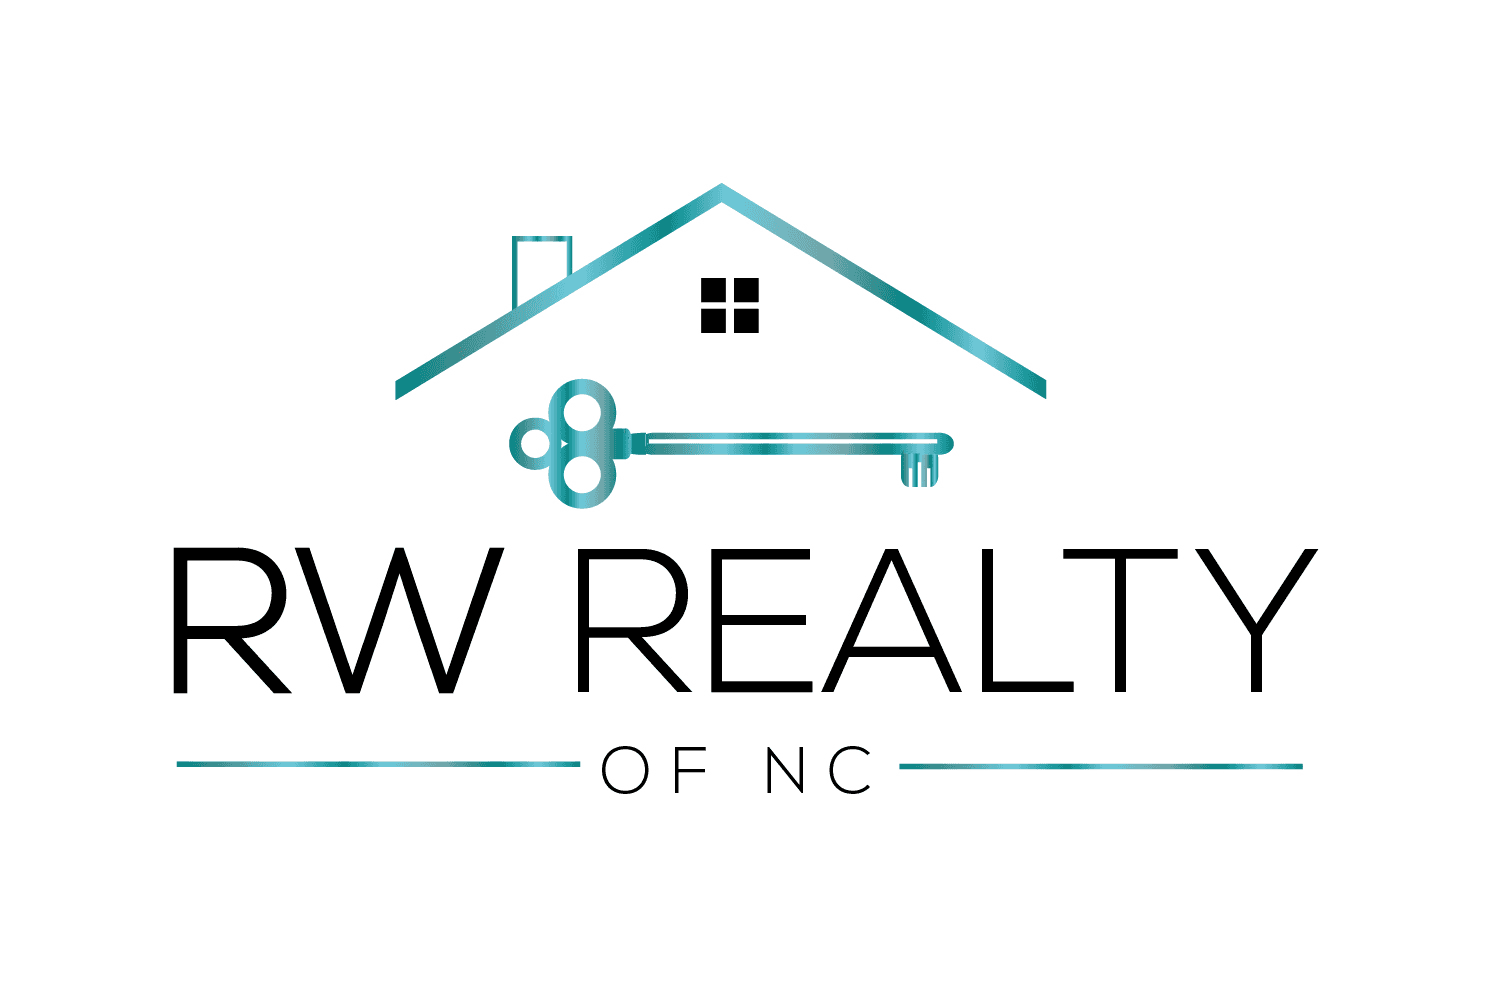 RW Realty of NC